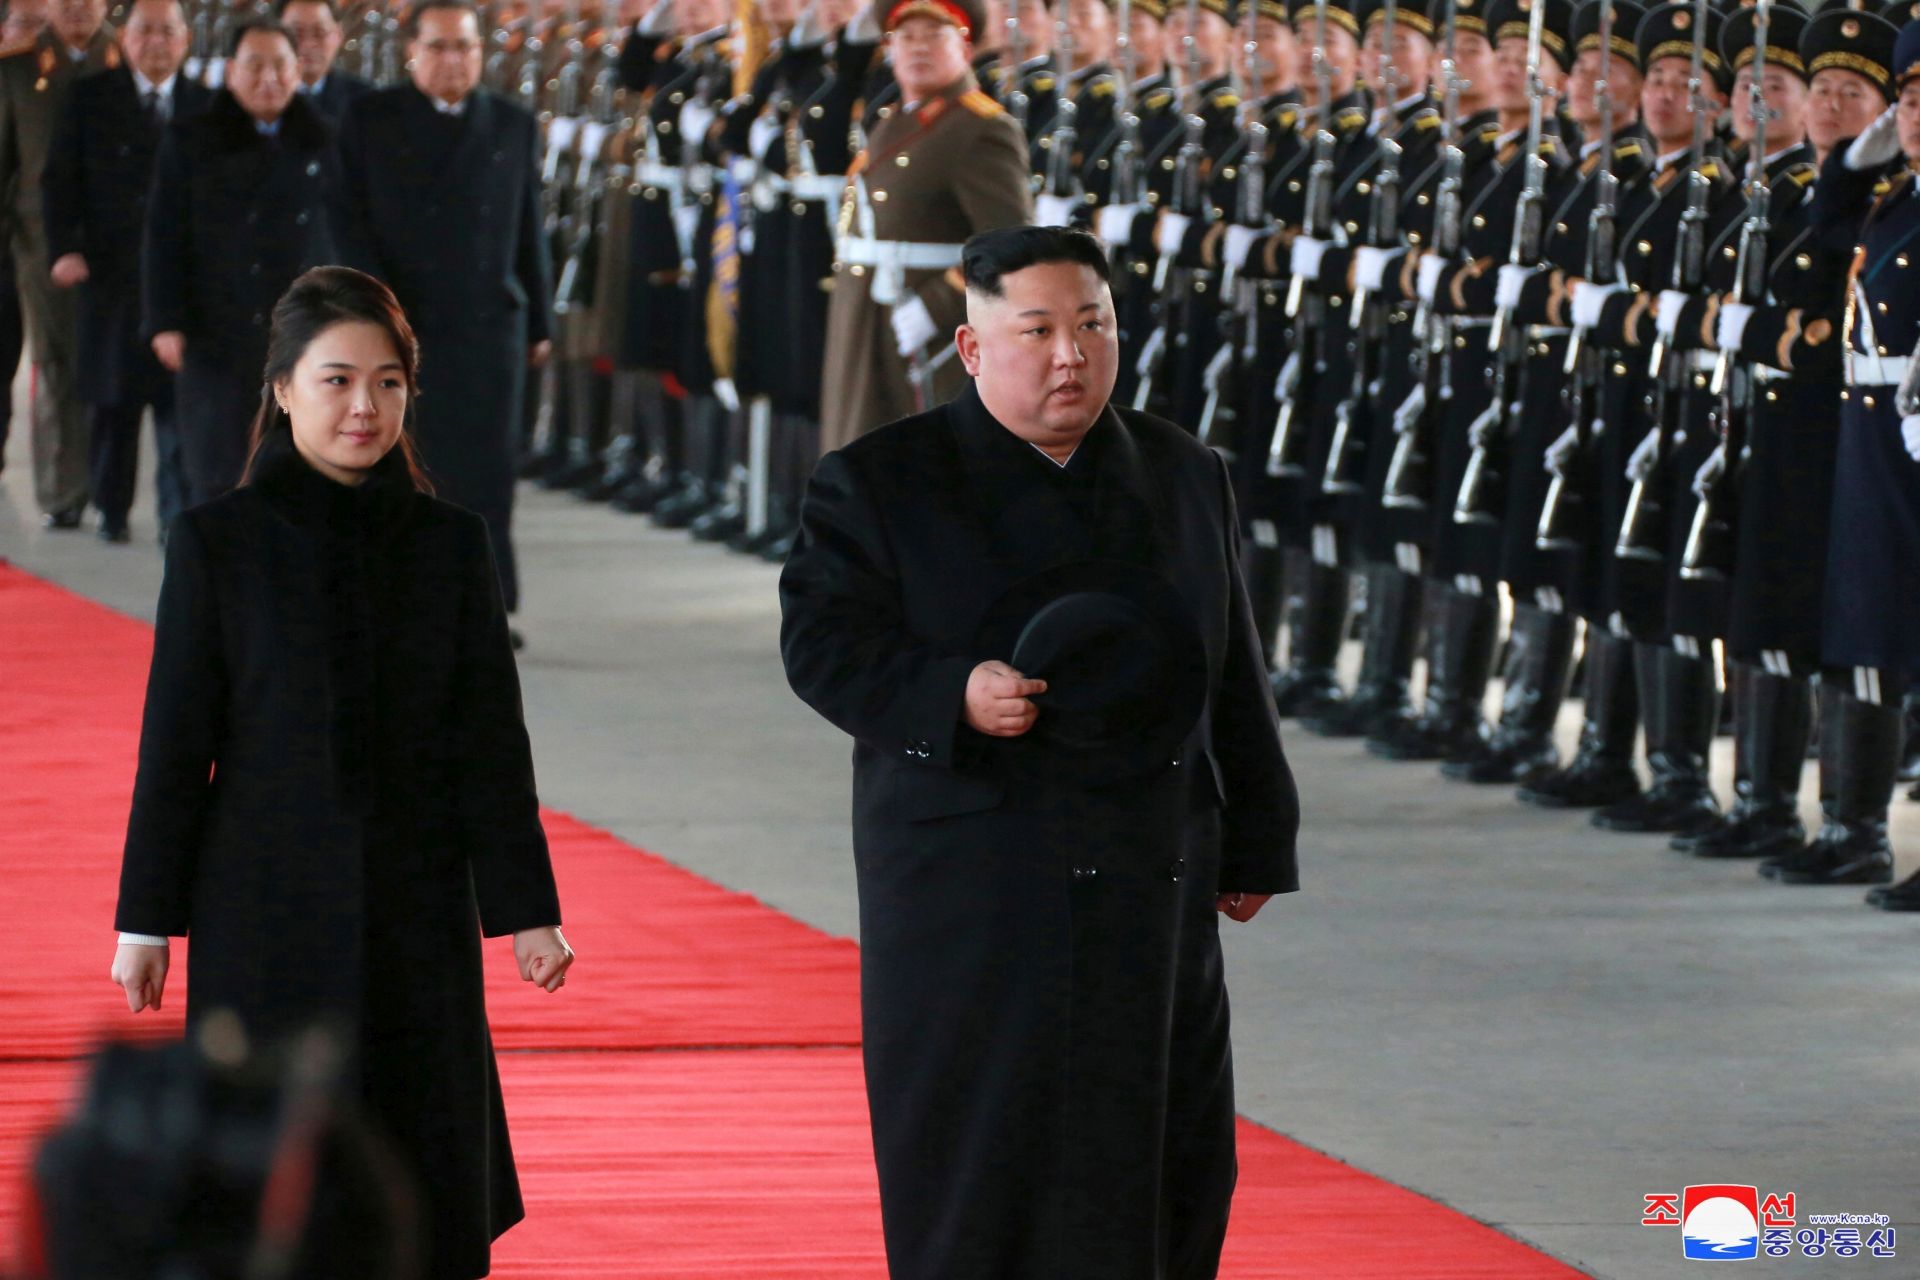 Először vezet be korlátozást a koronavírus miatt Észak-Korea